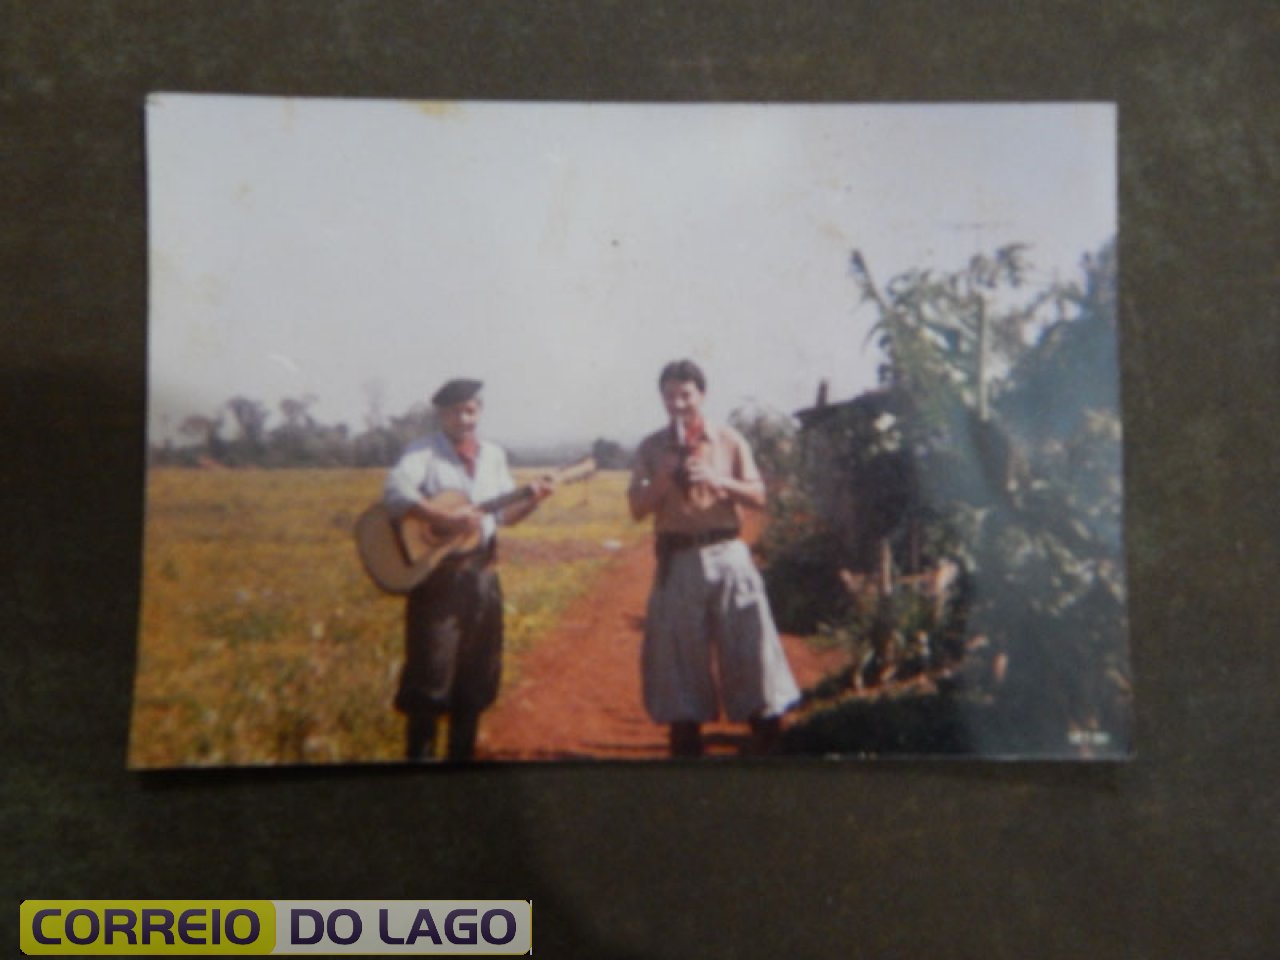 José Carvalho da Silva e seu violão. Ao lado o cunhado Dirceu residente em curitiba (passeio). Local - Mutirão 1 SH.